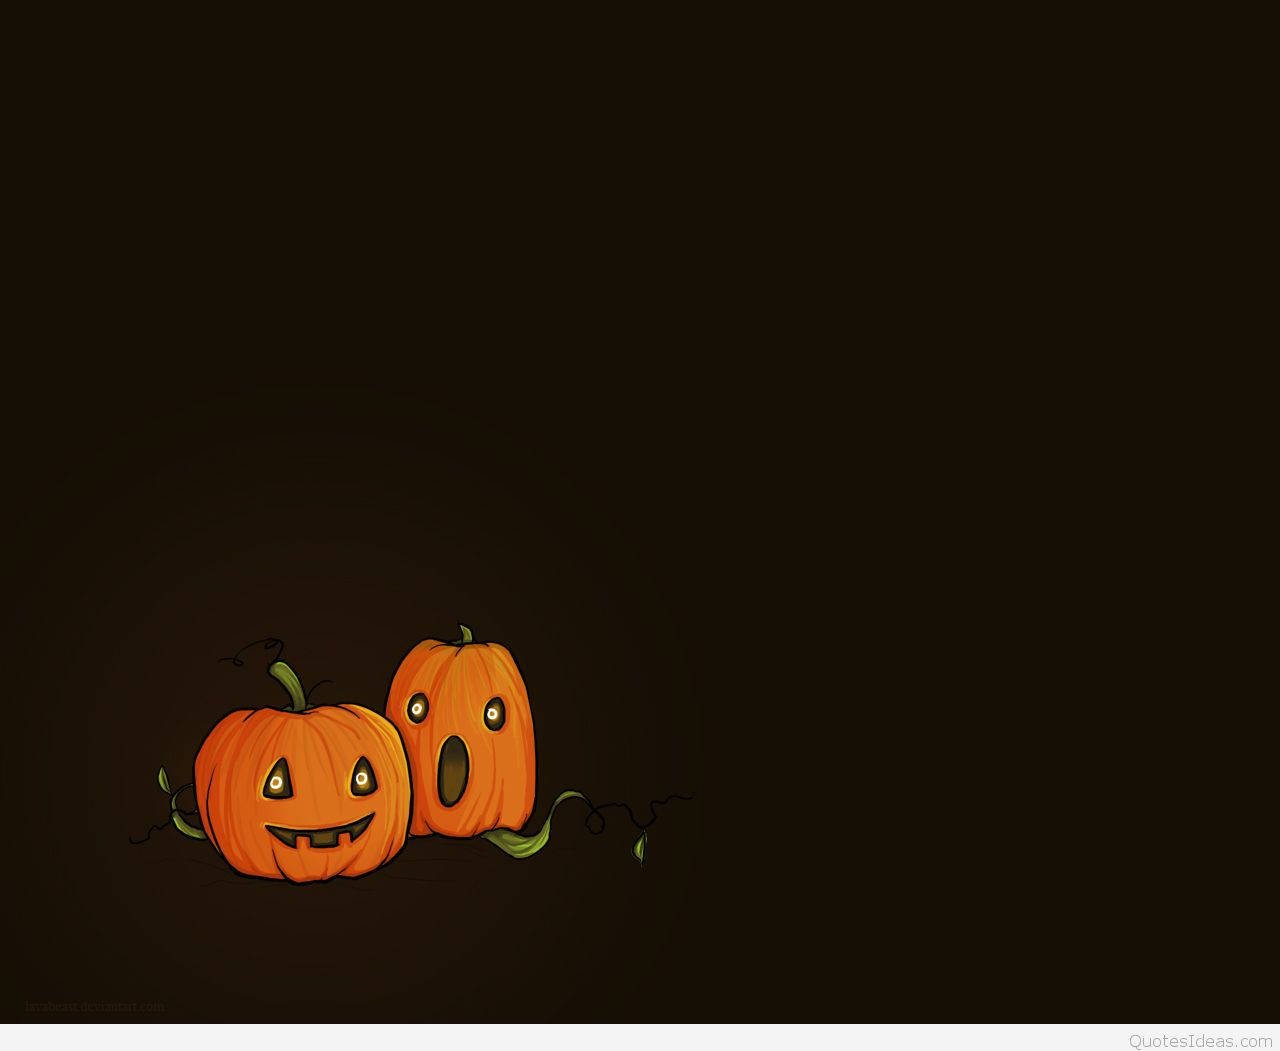 Download A Spooktacular Halloween Pumpkin Awaits Wallpaper